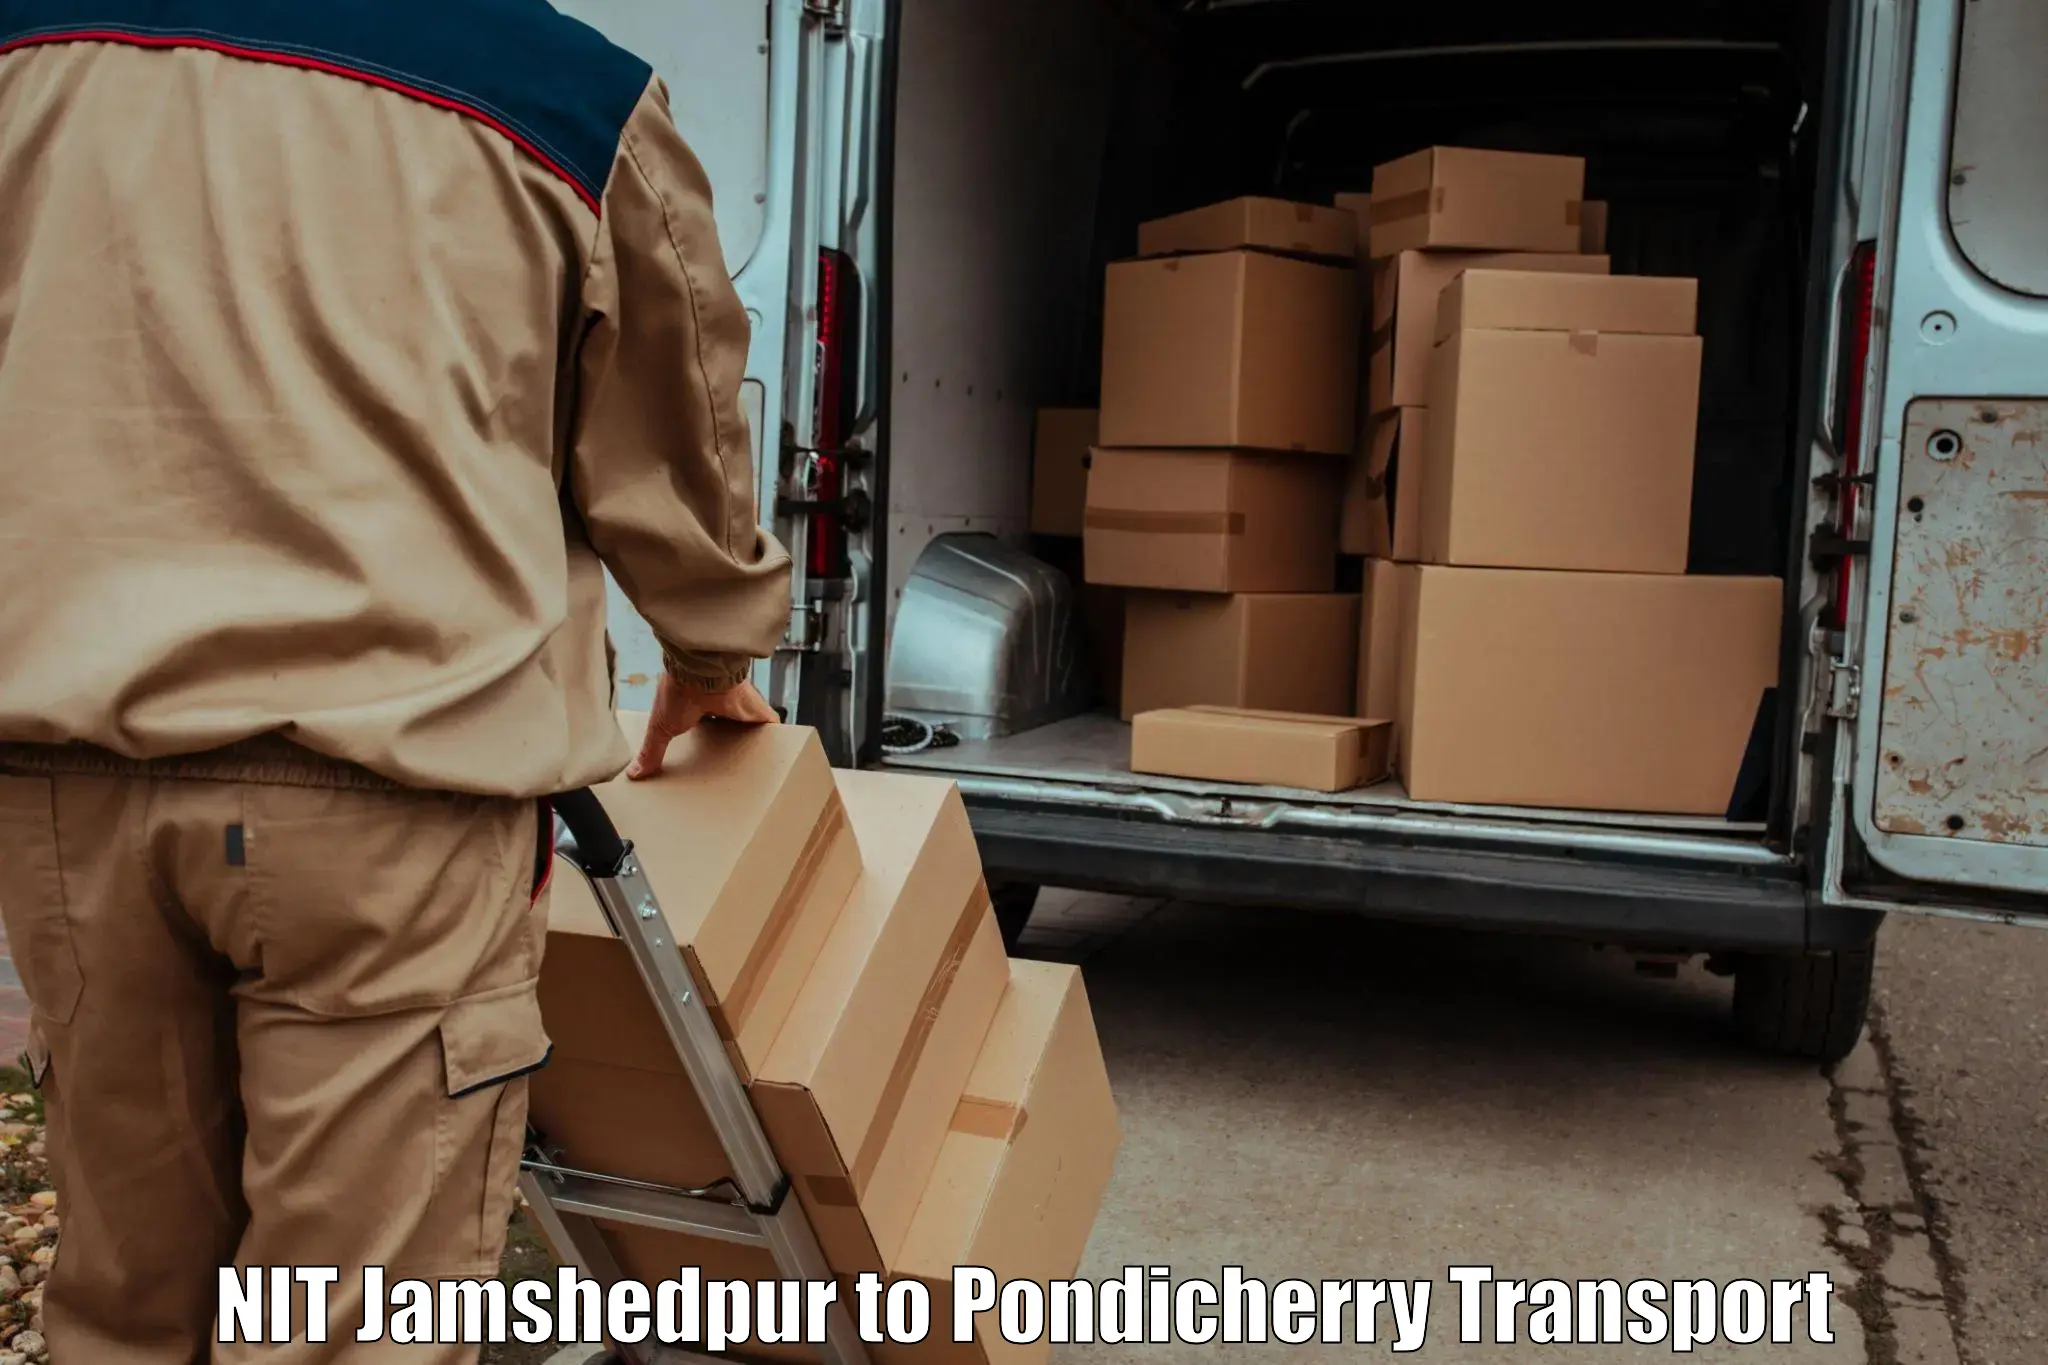 Bike shipping service NIT Jamshedpur to NIT Puducherry